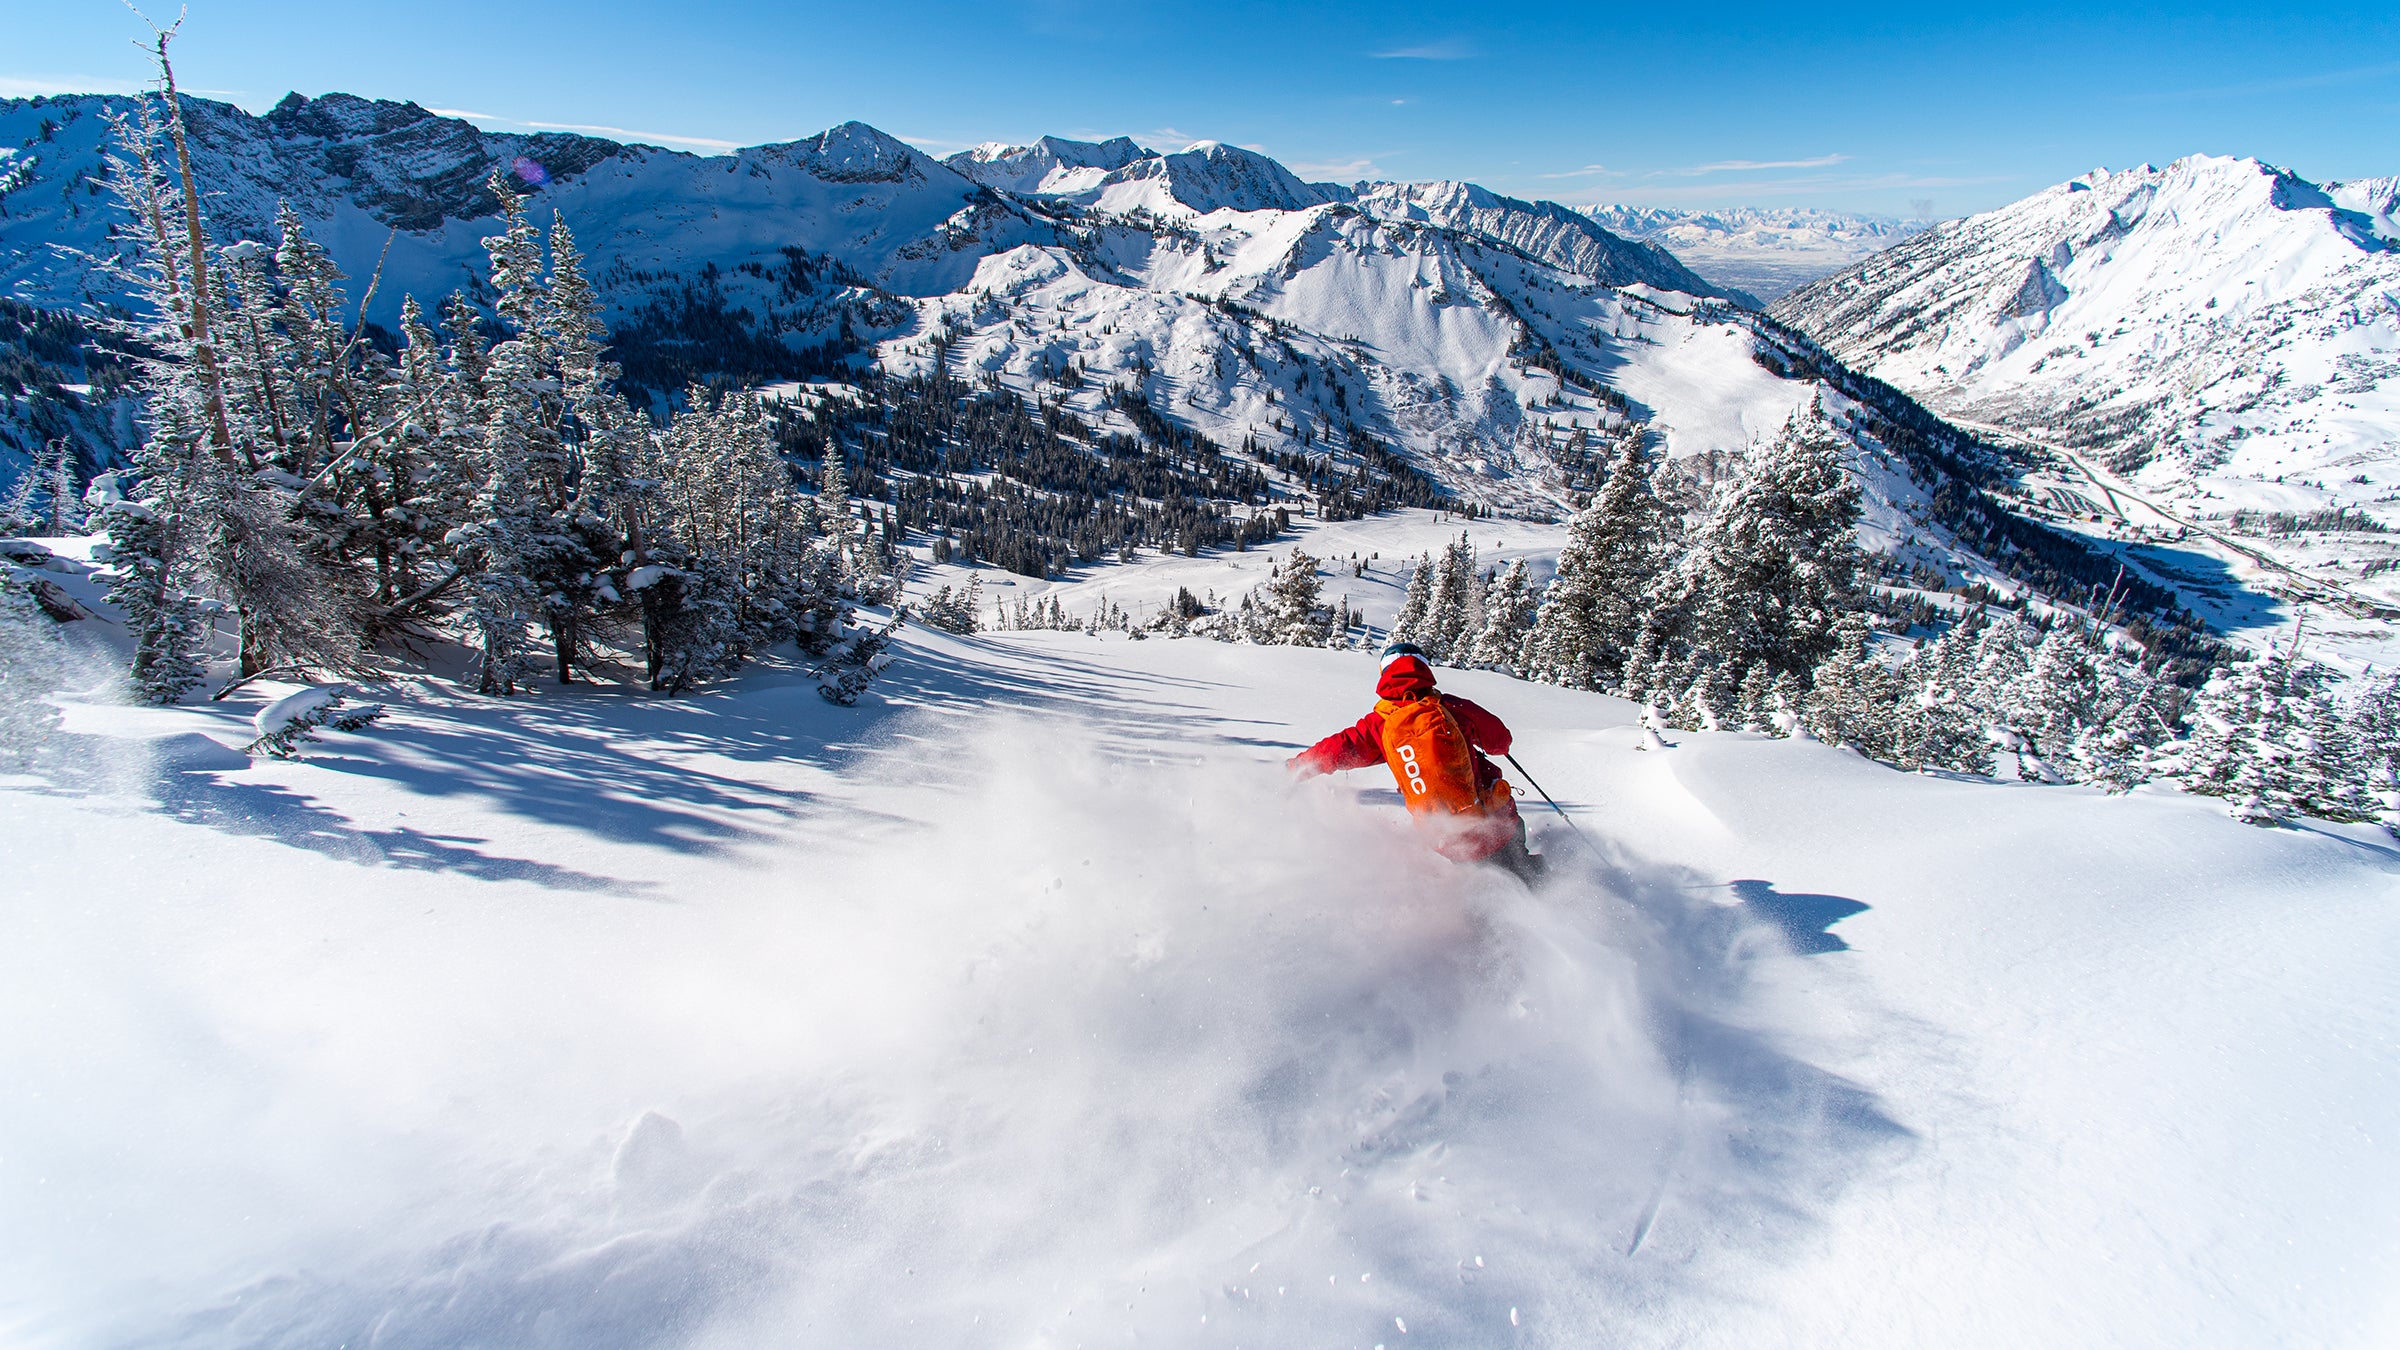 Where to Ski This Season